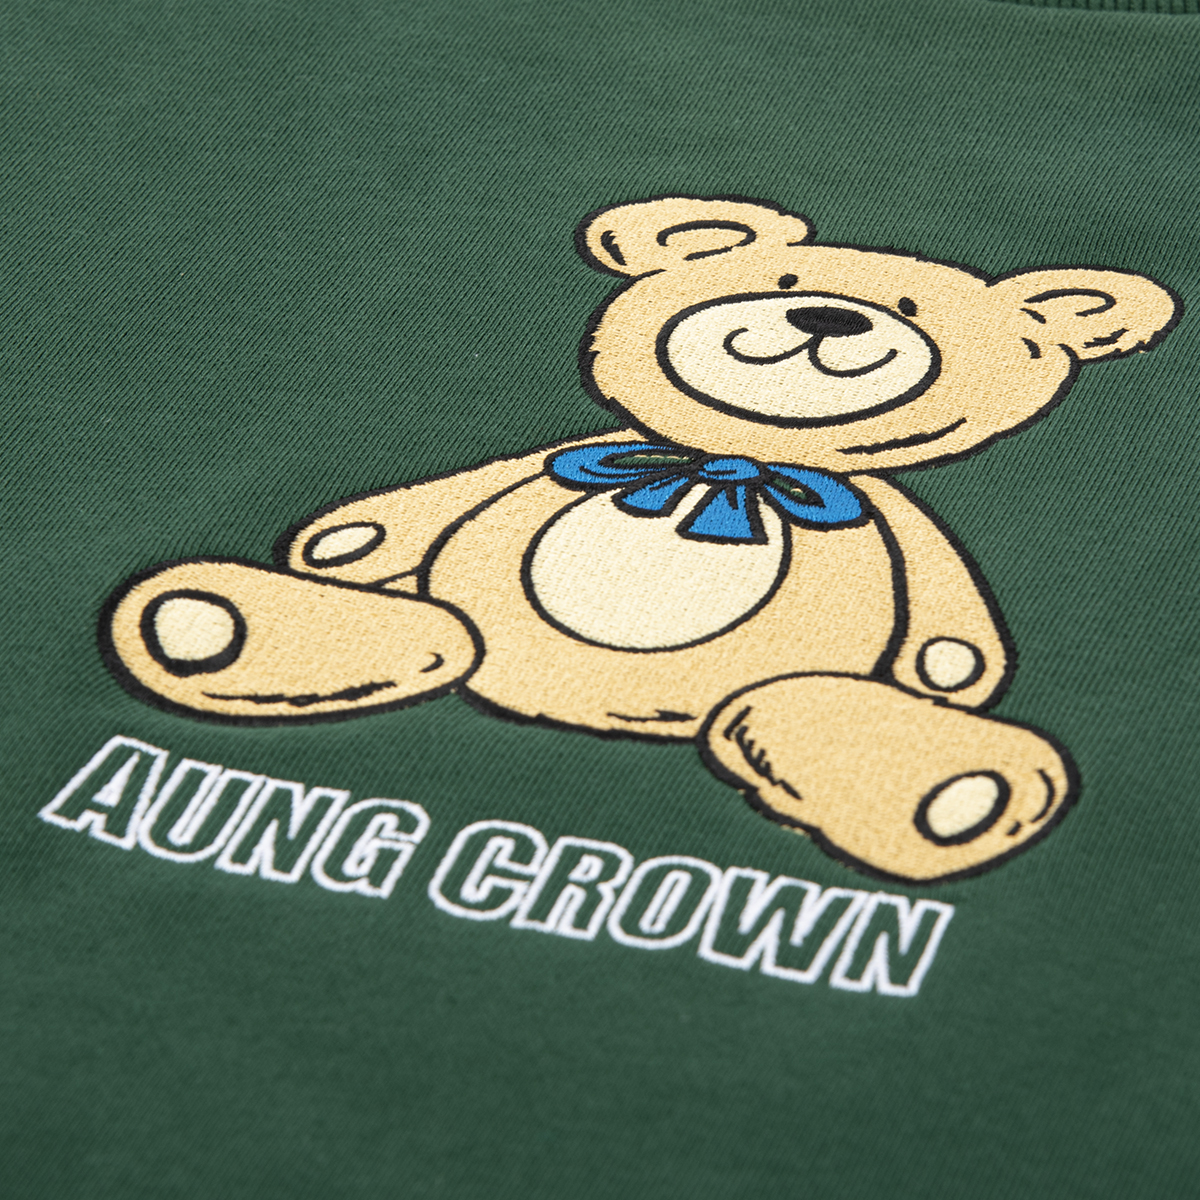 AungCrown cartoon embrodiery long sleeves casual sweatshirt